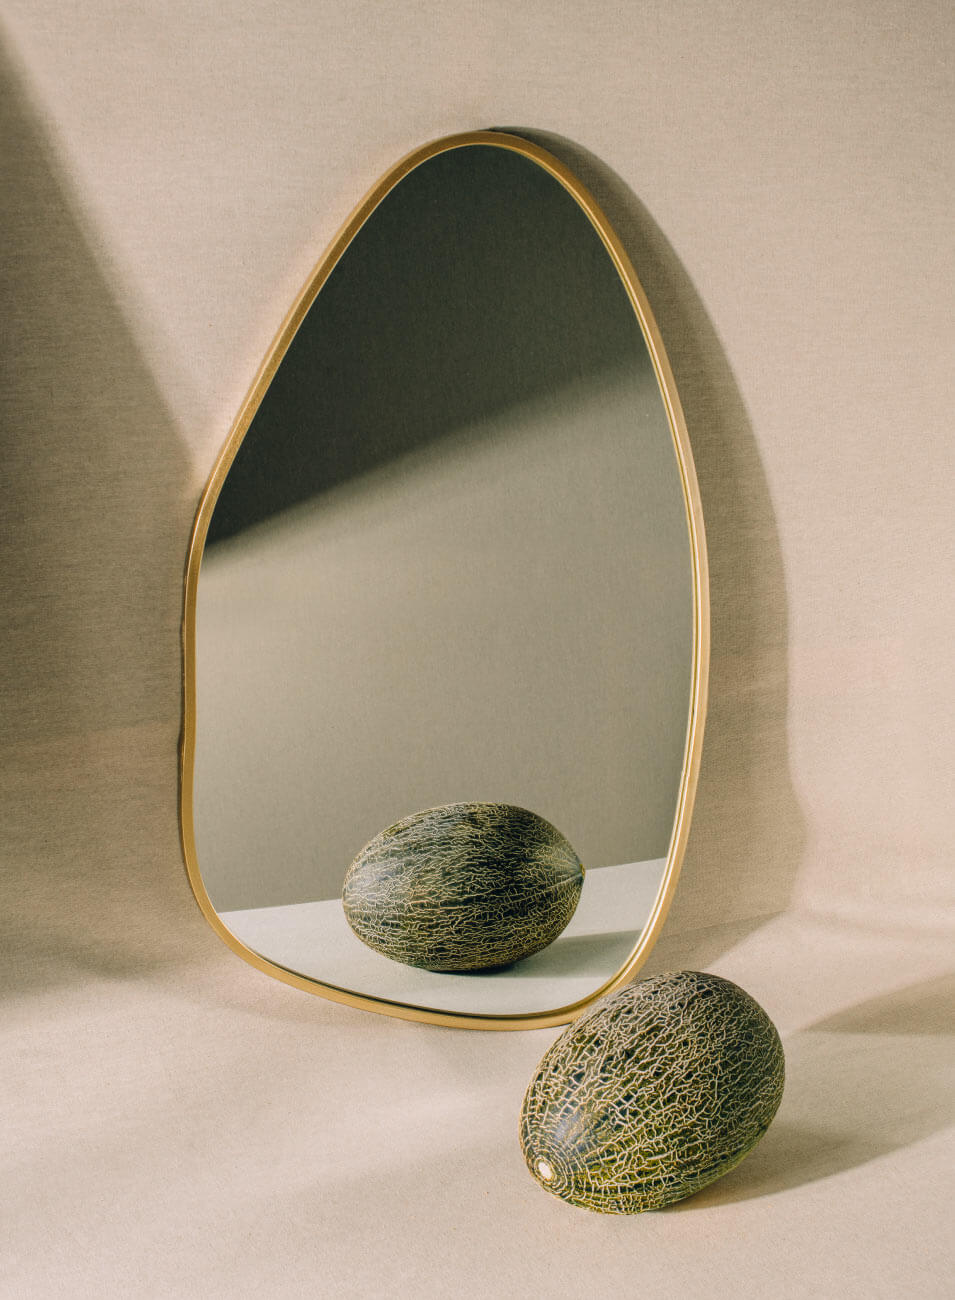 Un melón fotografiado delante de un espejo de marco dorado y forma redondeada irregular